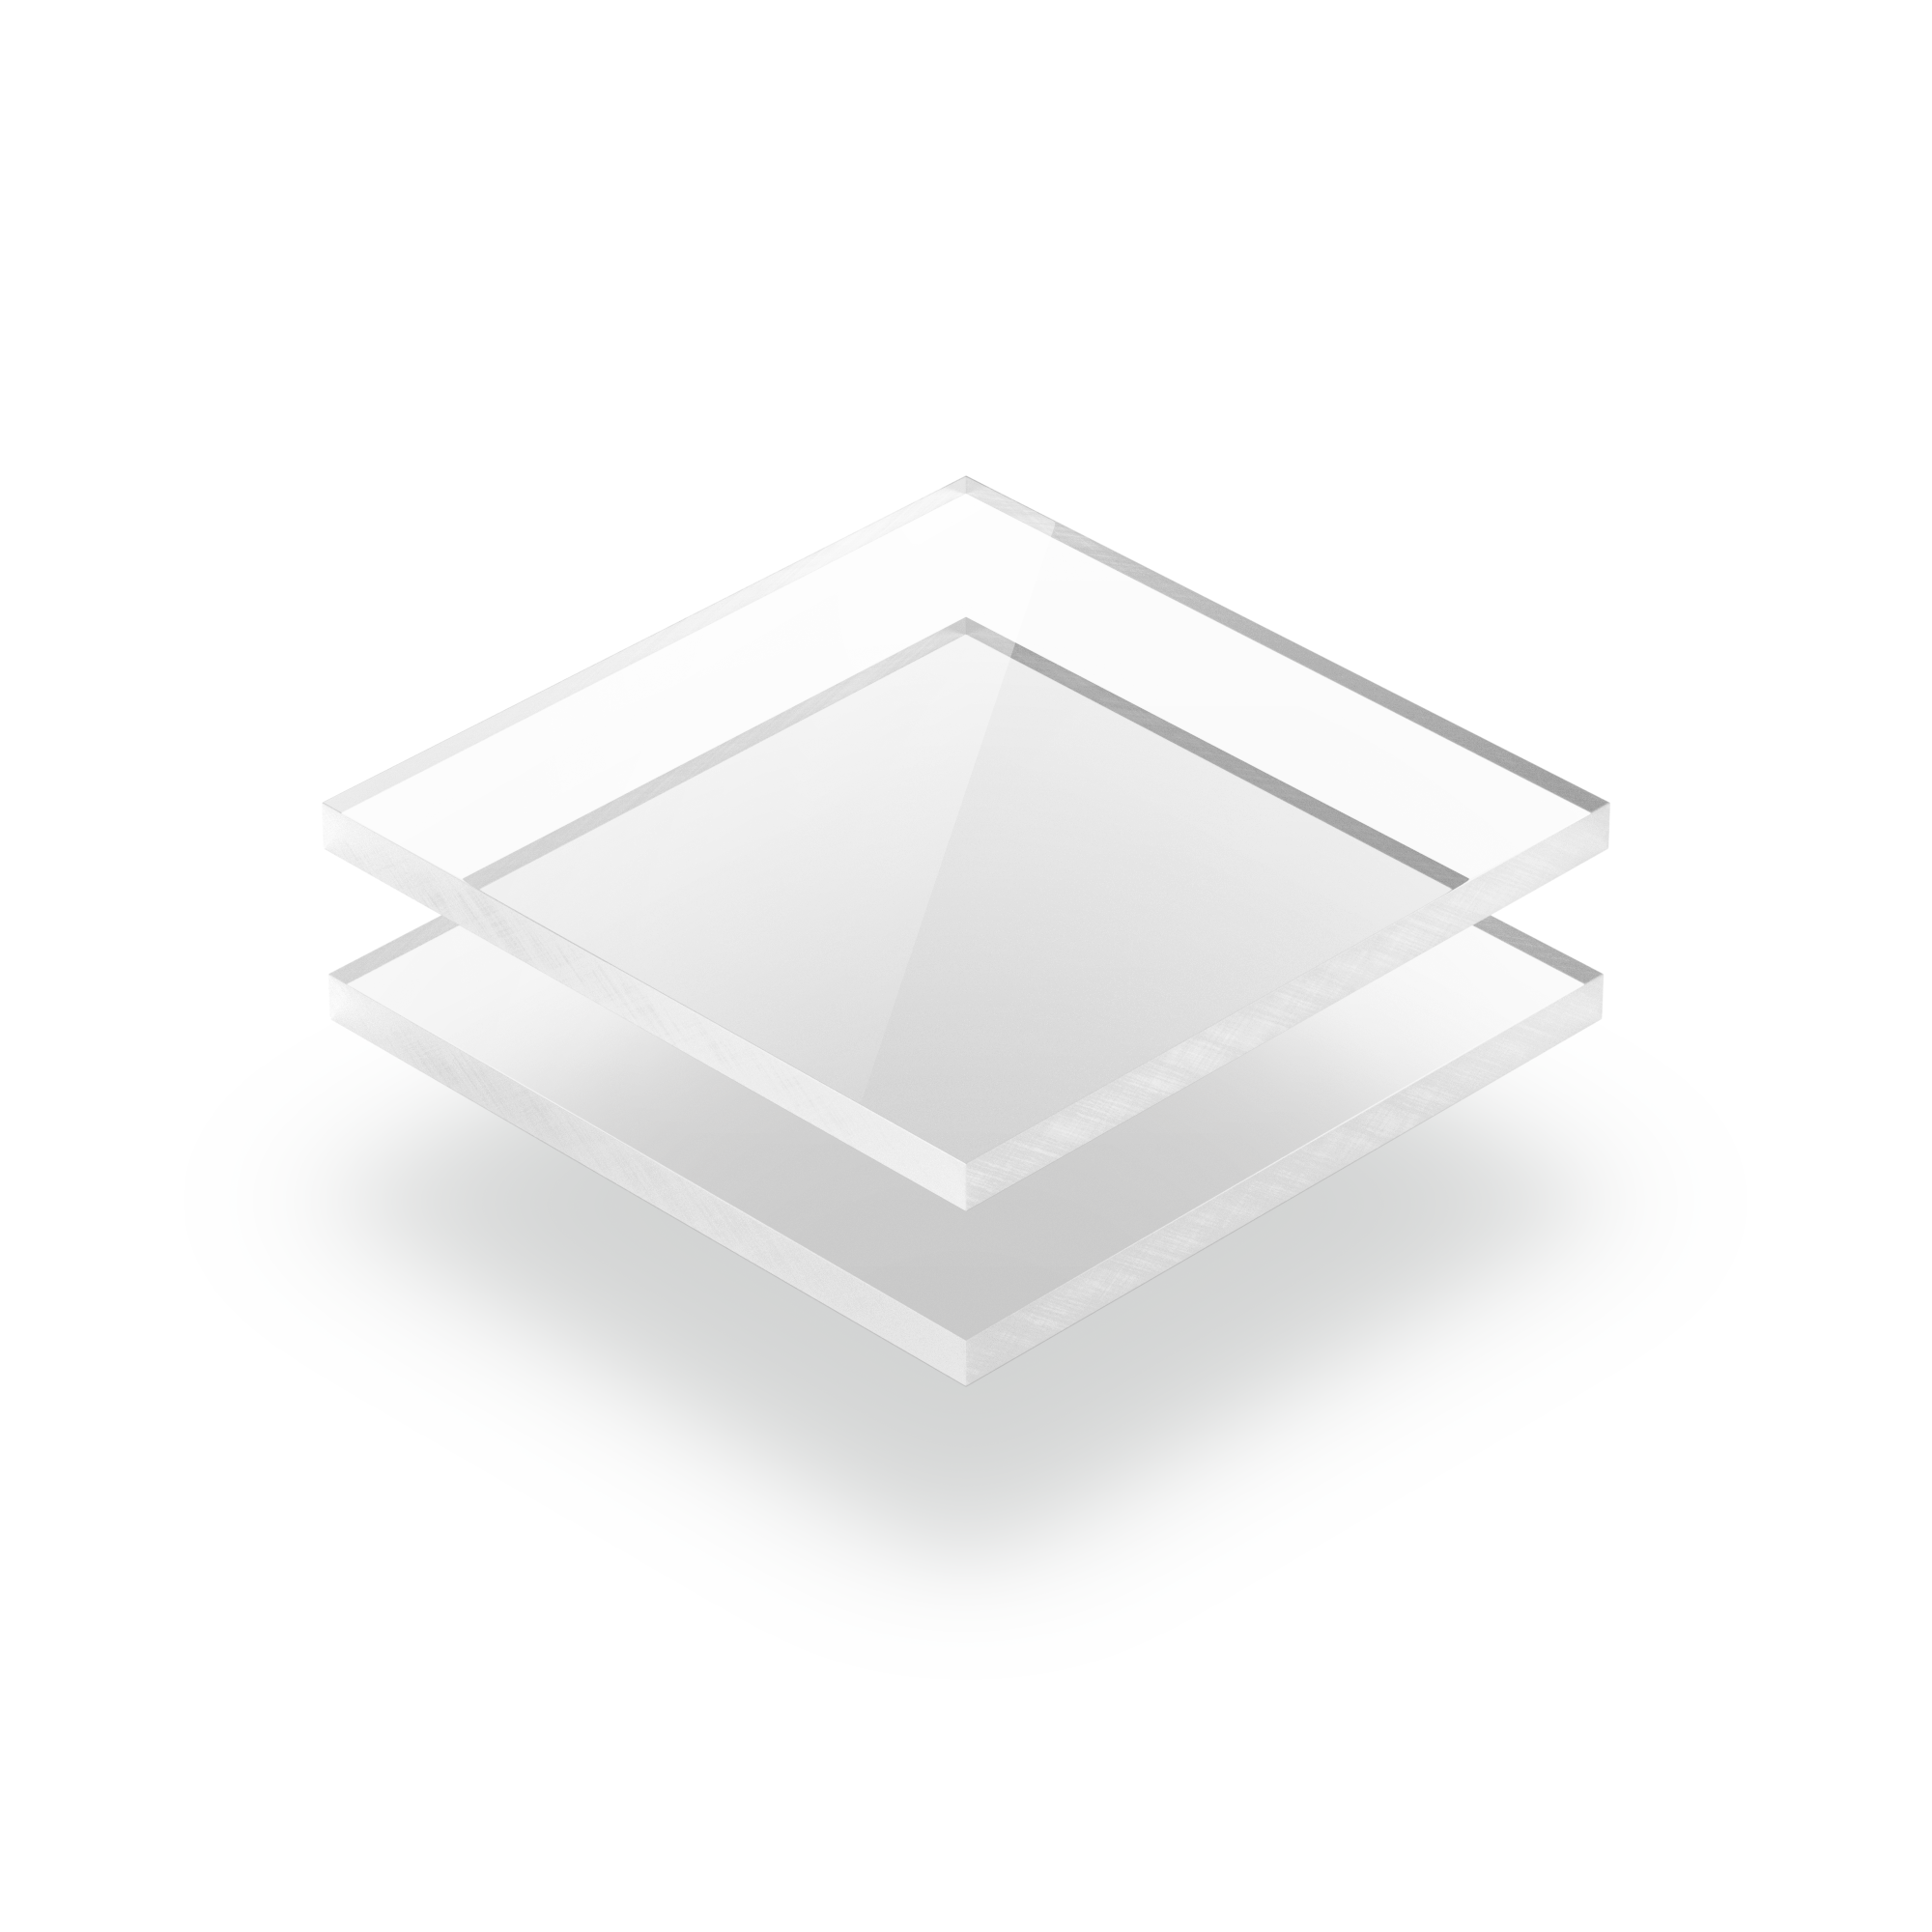 Plaque en Plexi transparent épaisseur 5mm 30x20cm